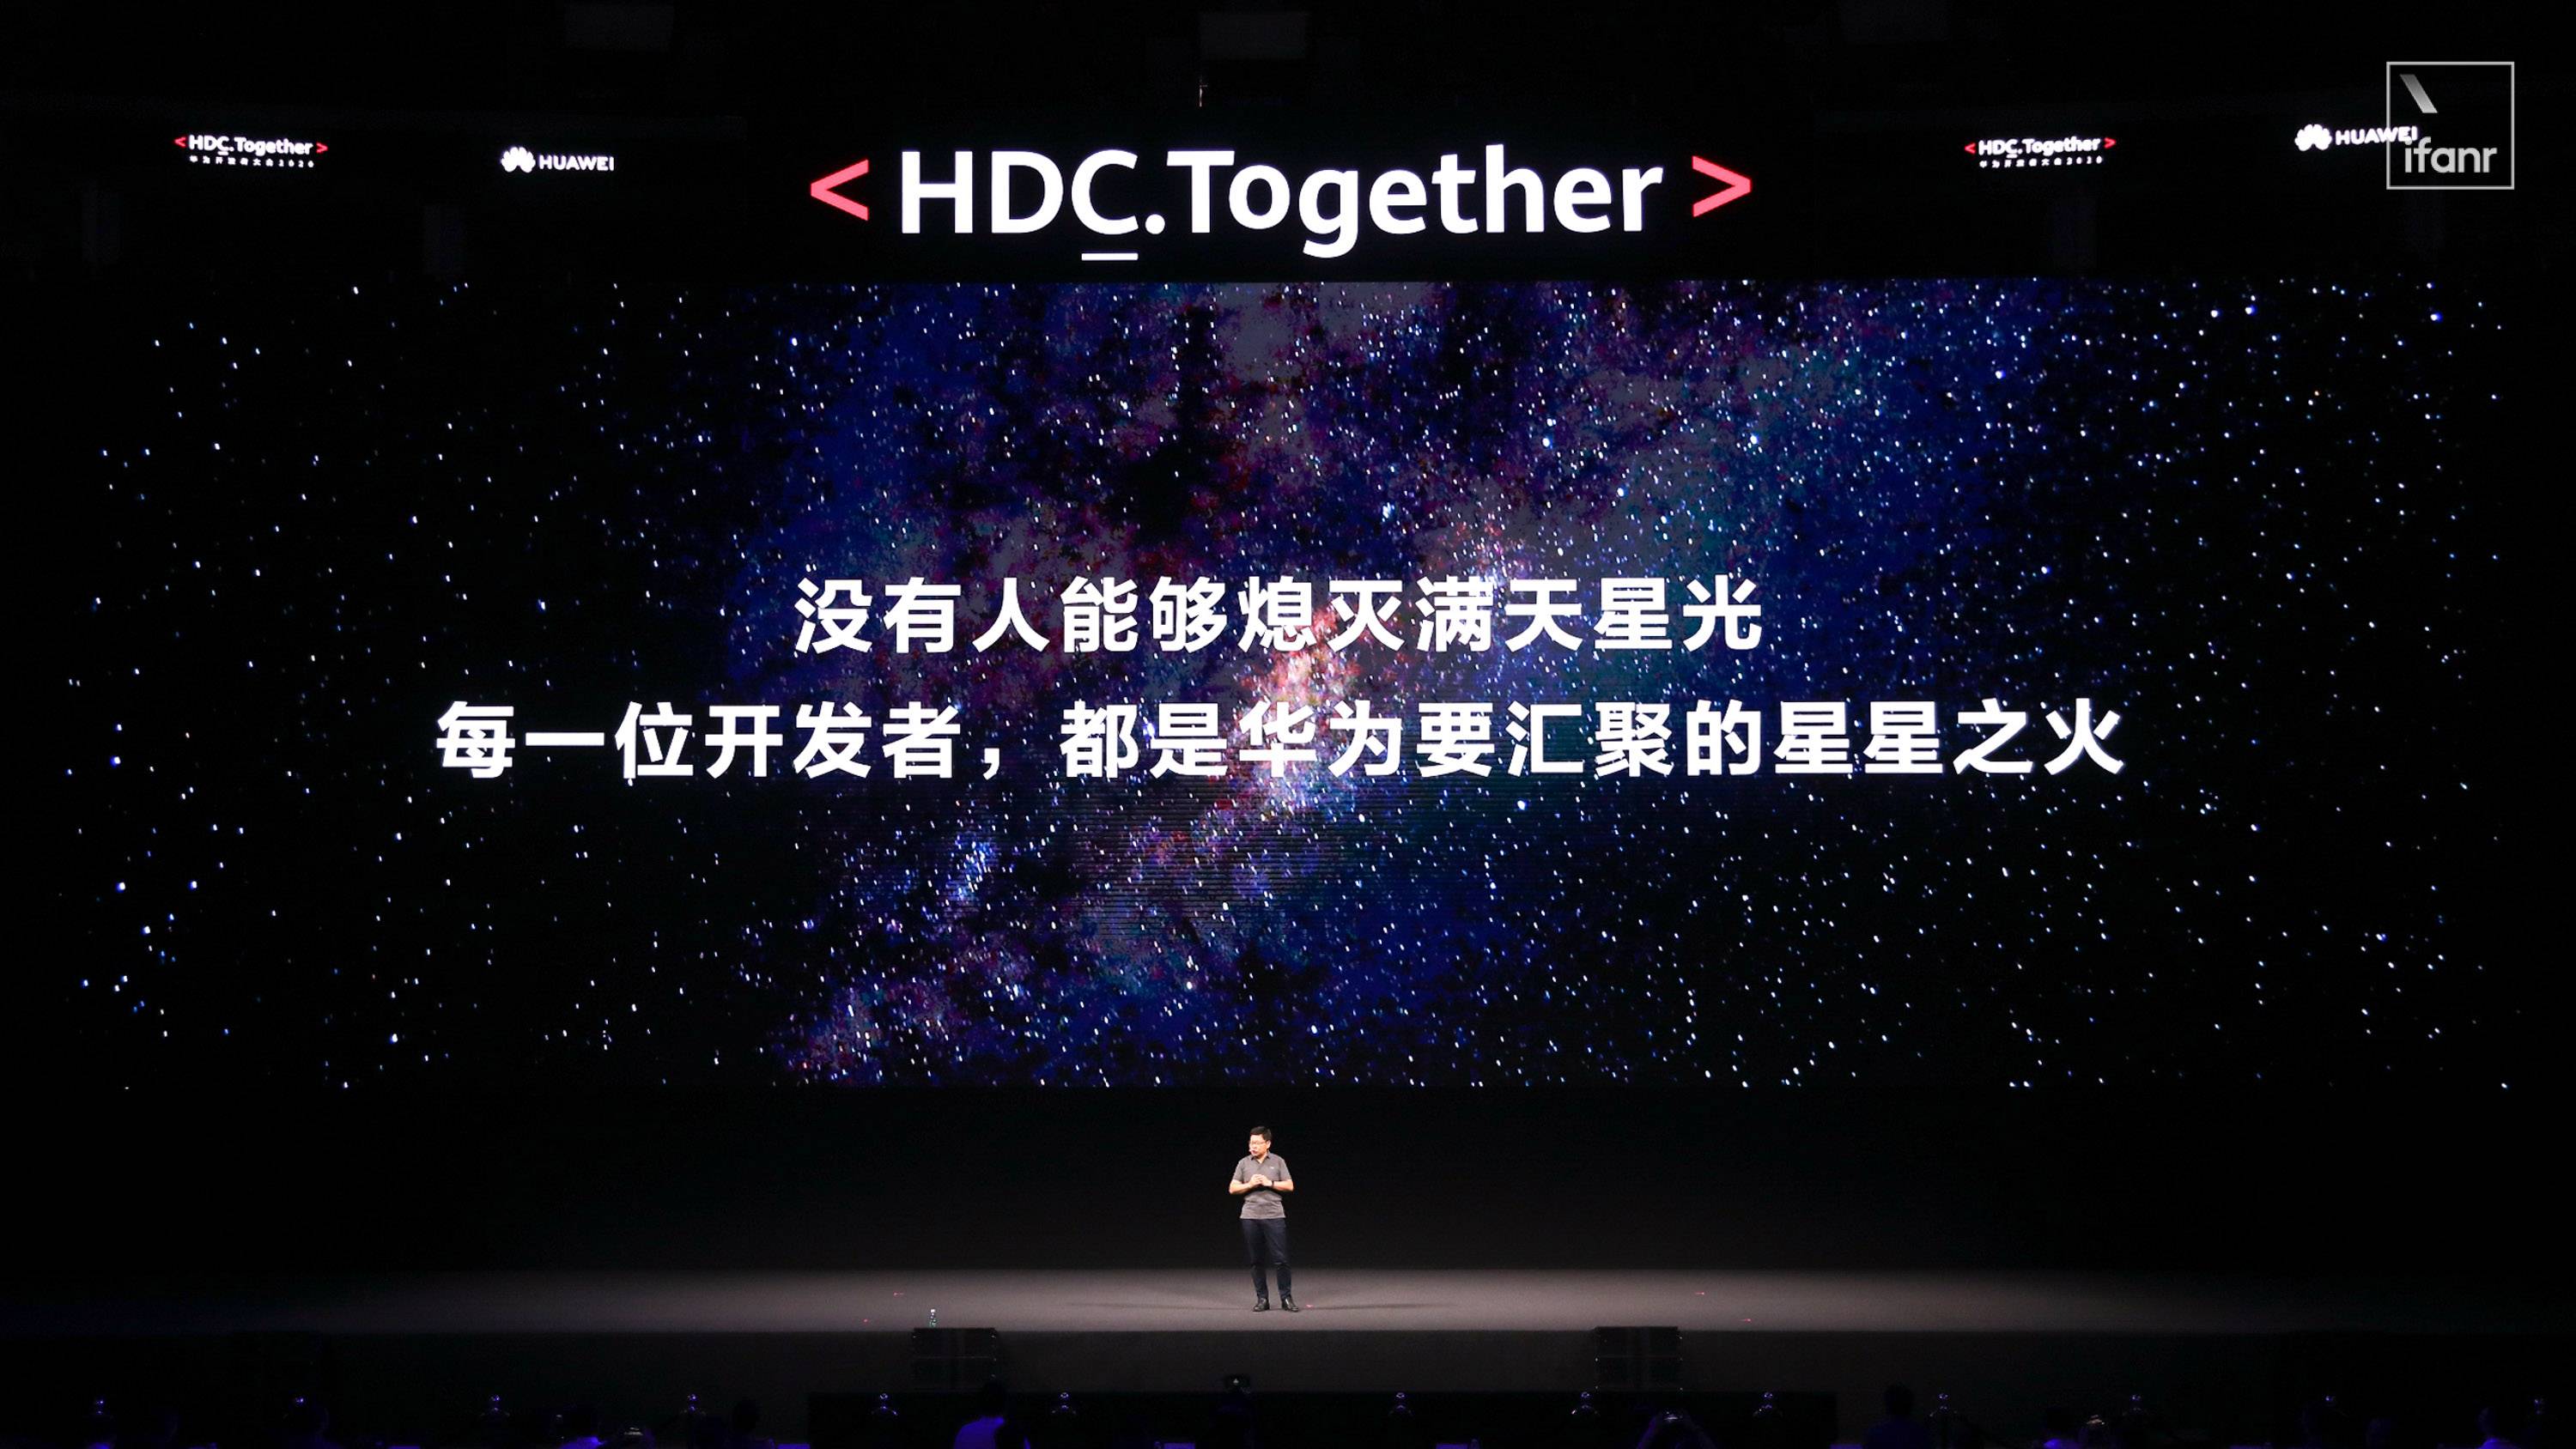 HDC 2020 Tittle - Huawei Hongmeng 2.0 è qui! Se non esegui un secondo Android, sarai sul tuo telefono entro la fine dell’anno